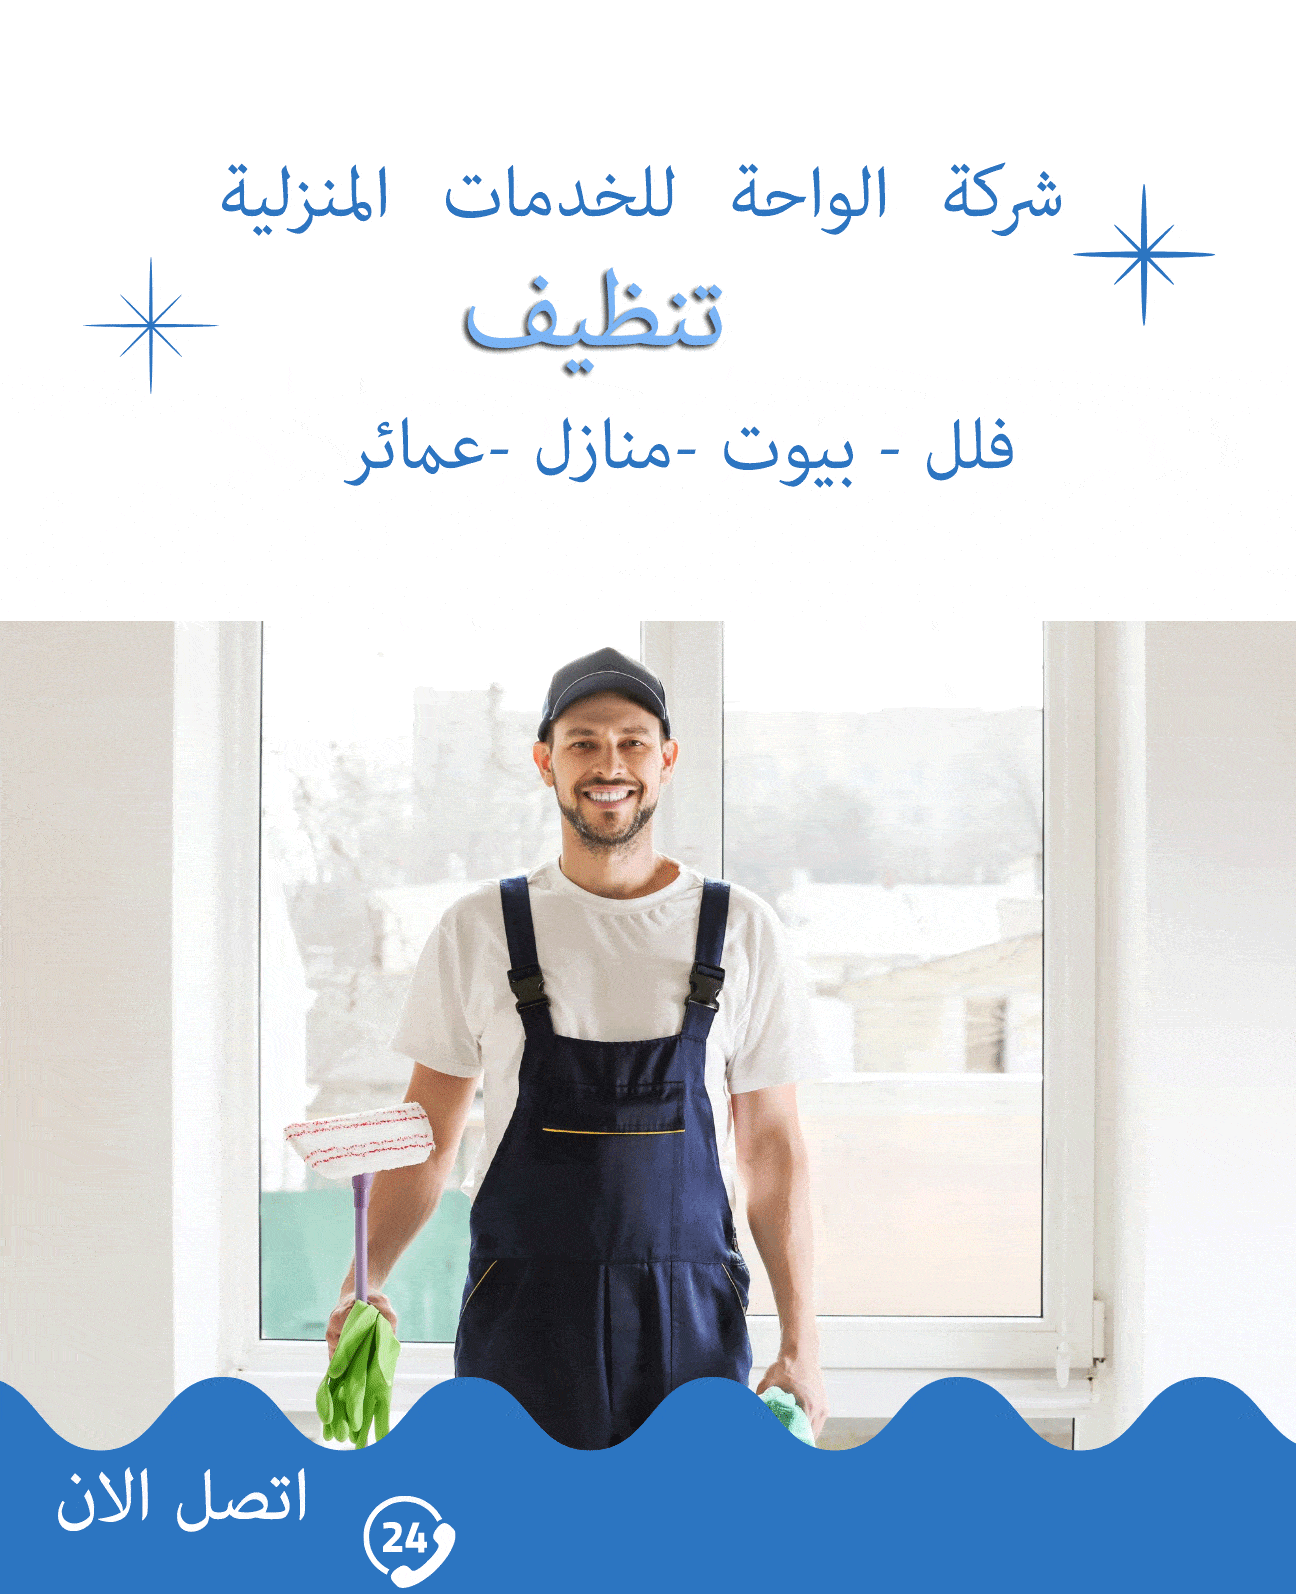 A cleaning company in Riyadh